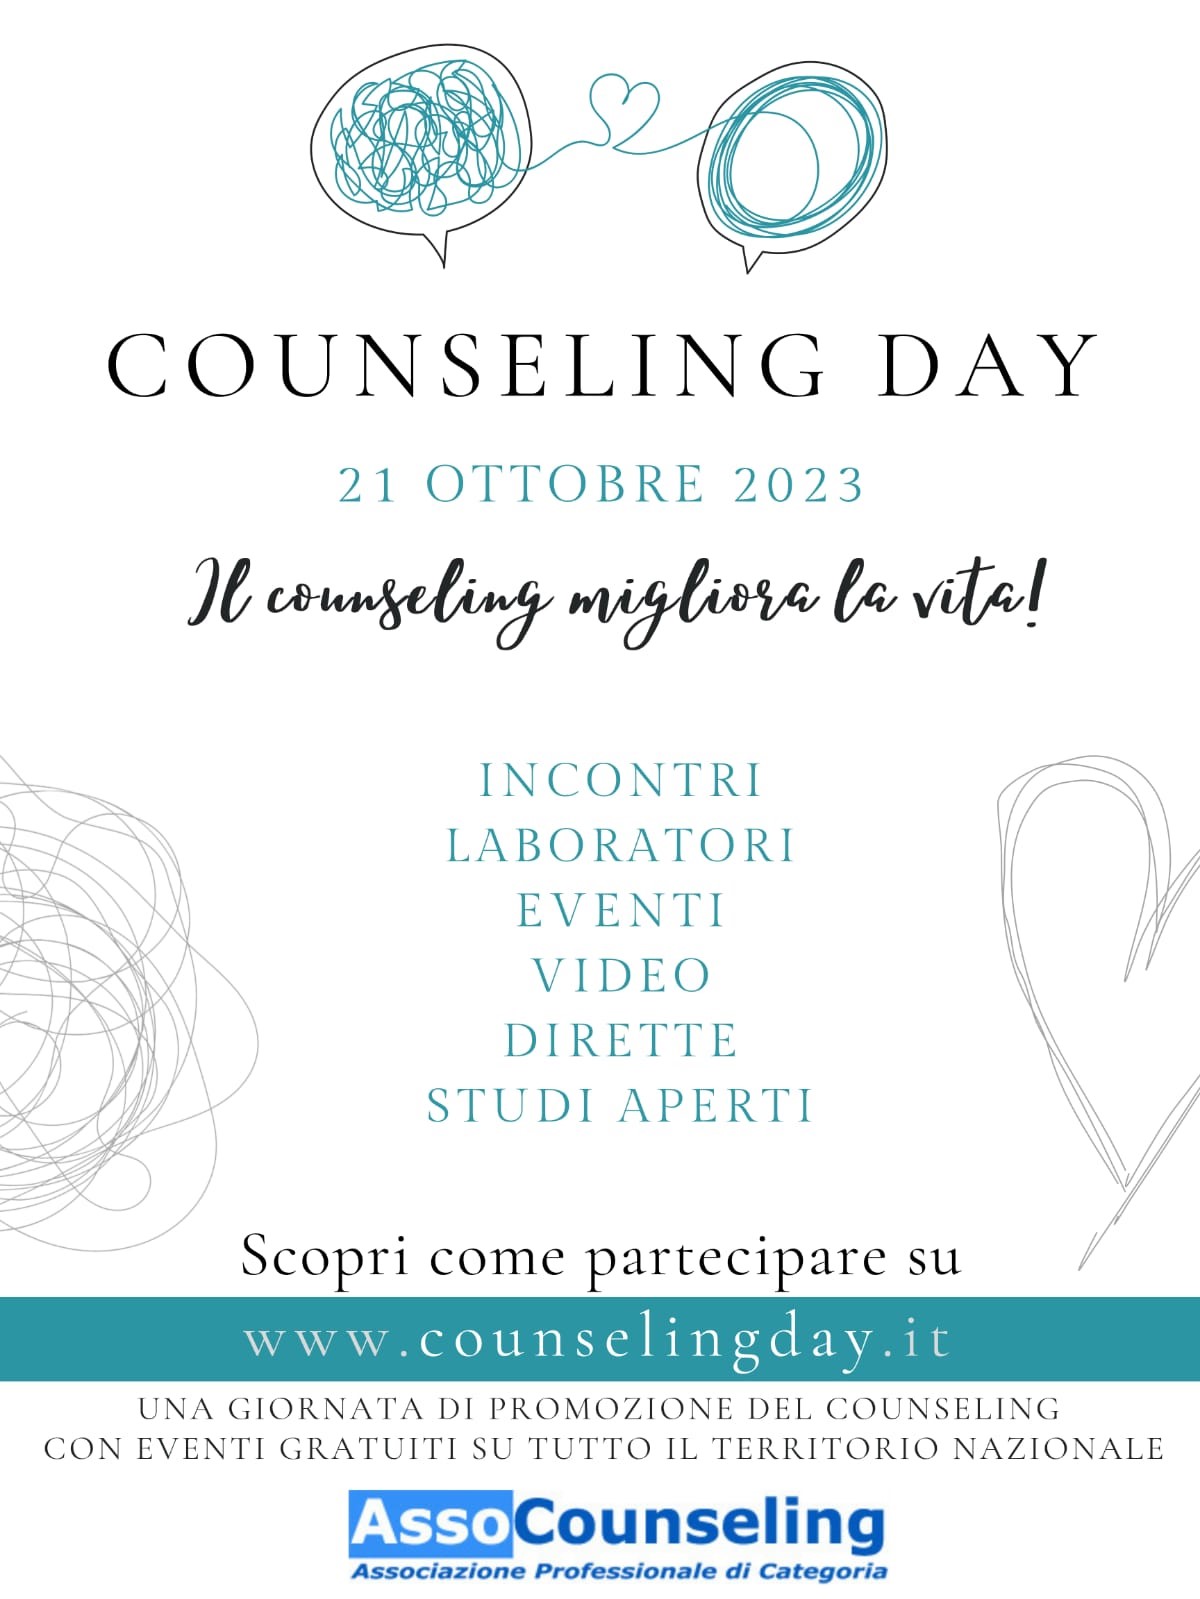 Scopri tutti gli eventi su www.counselingday.it